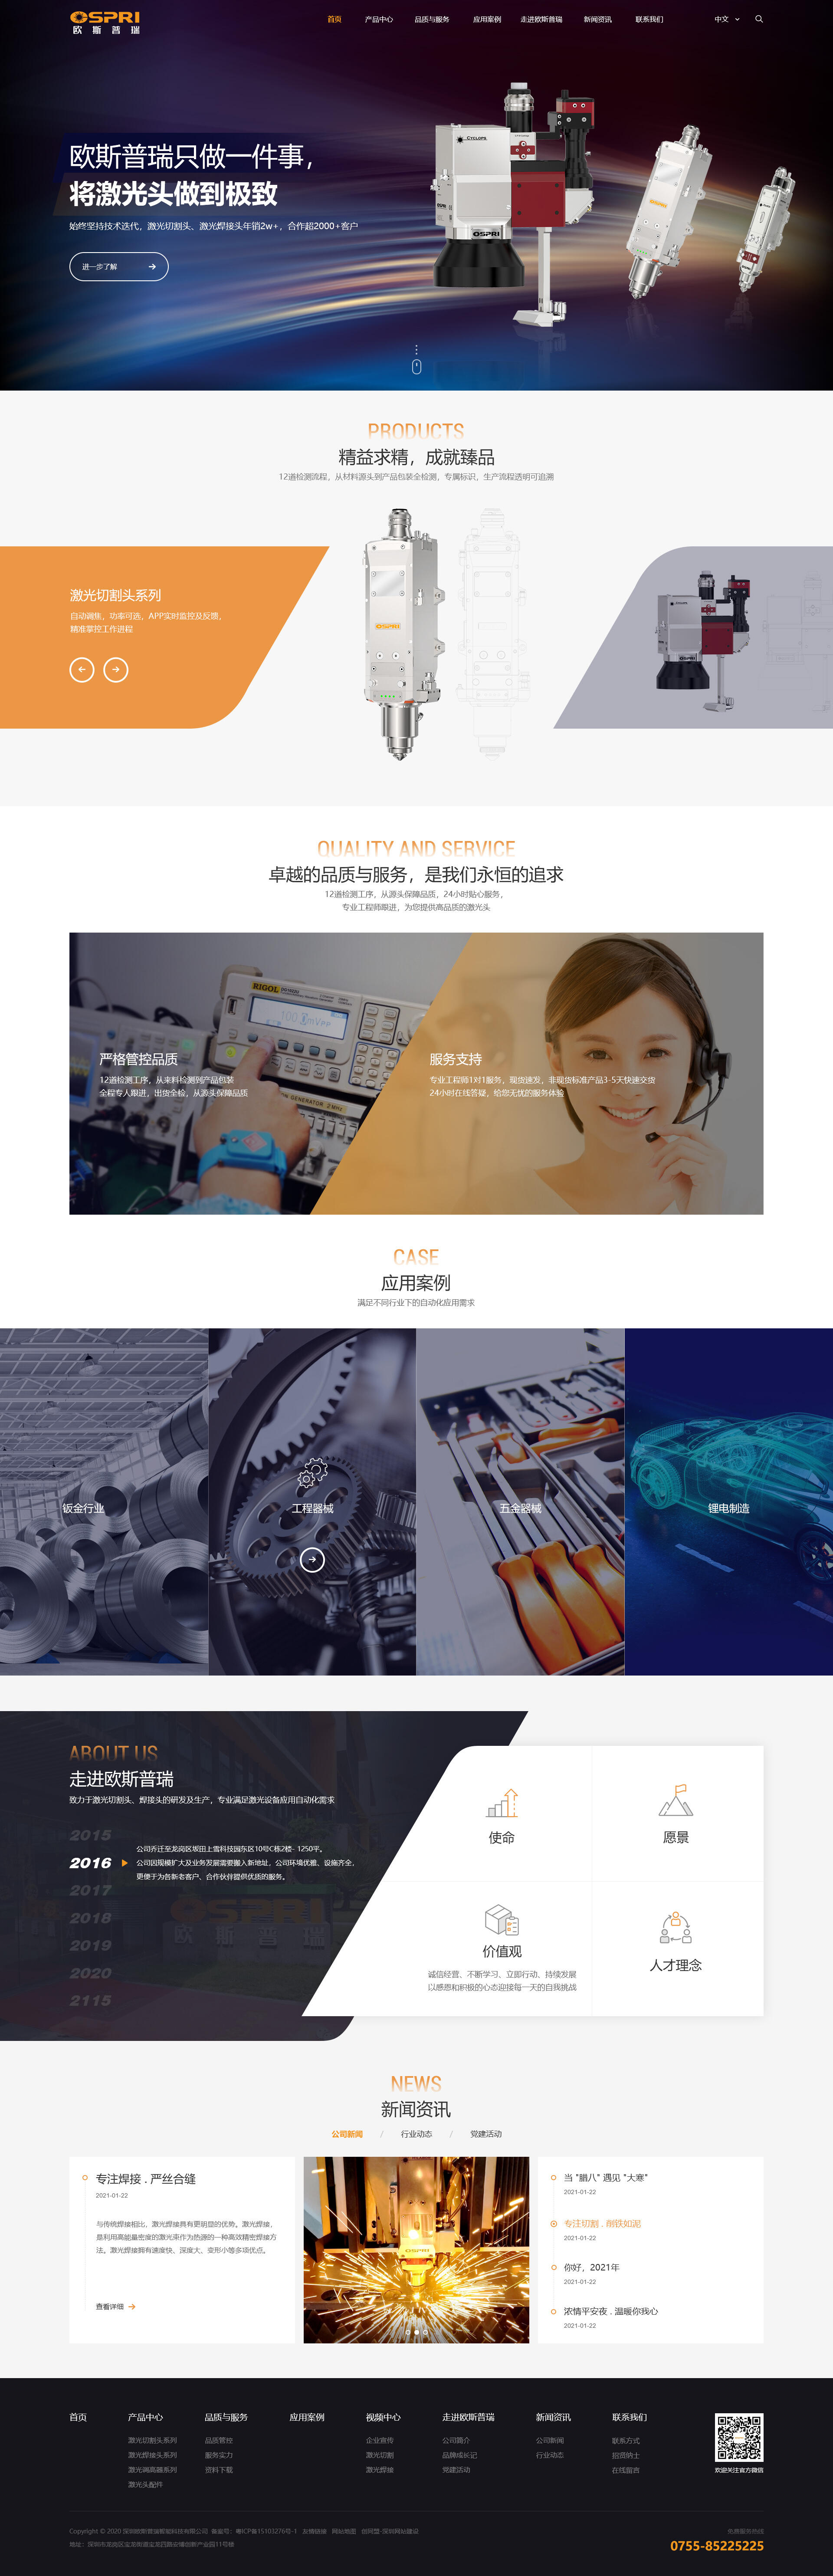 深圳欧斯普瑞智能科技有限公司 页面展示